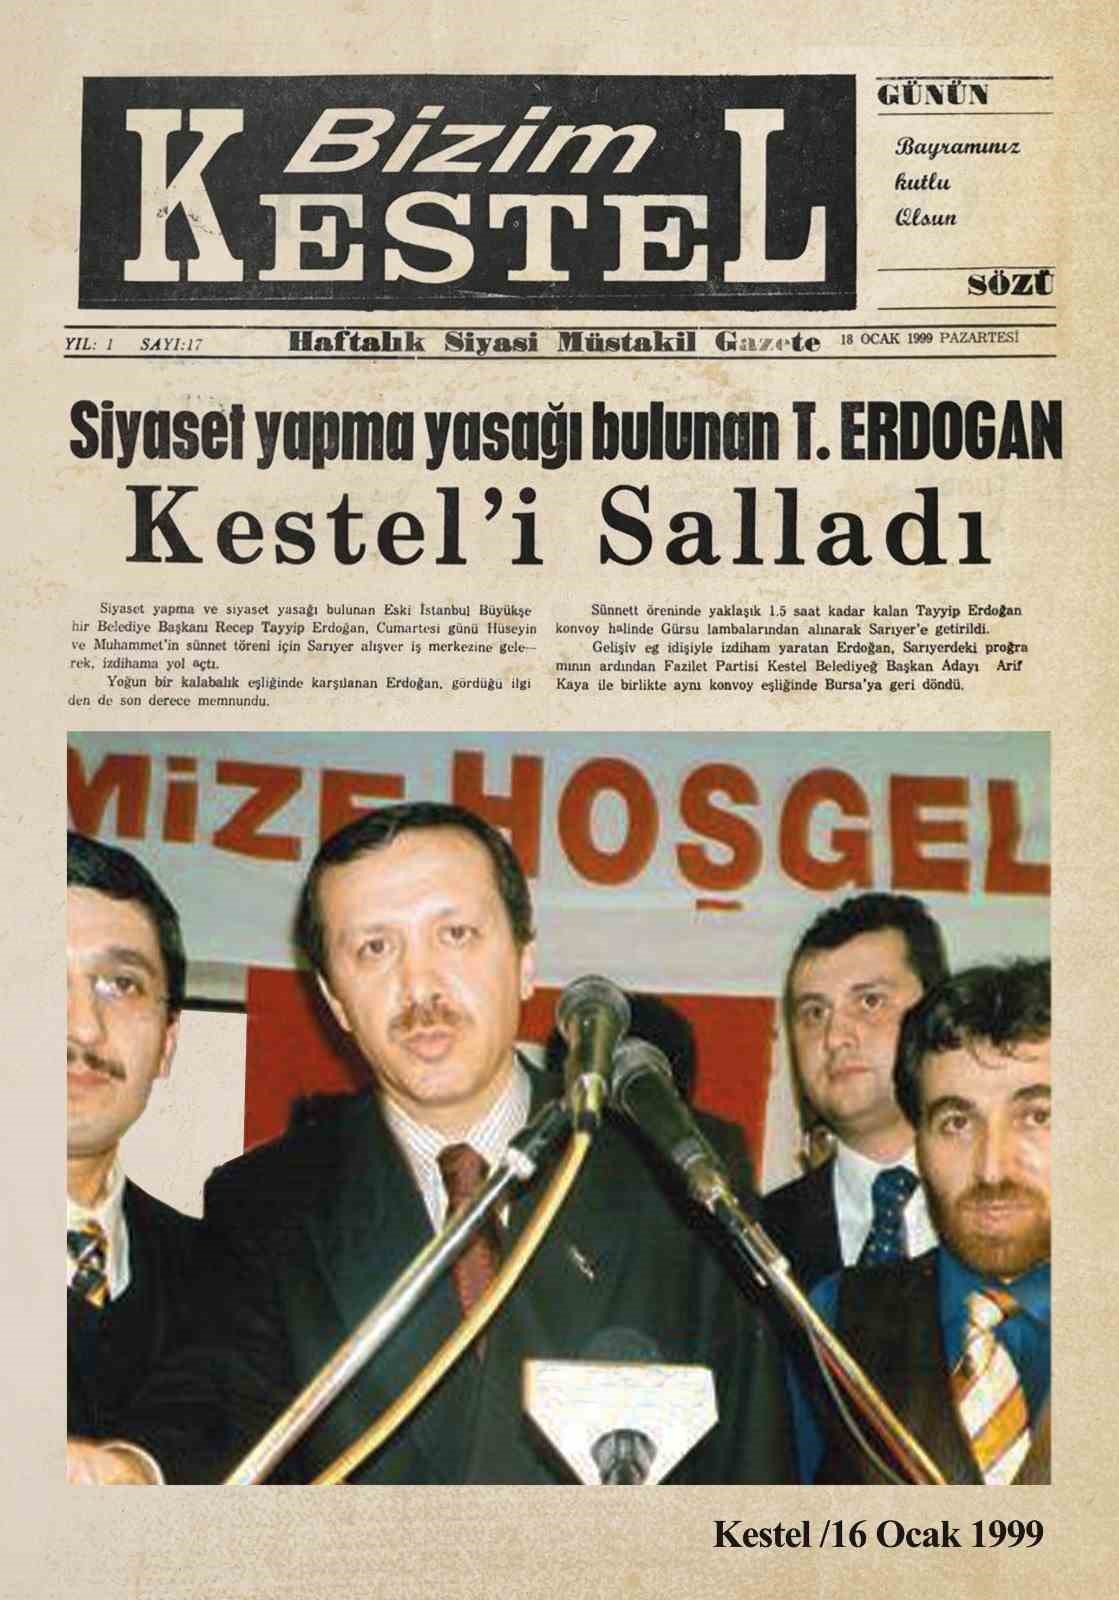 Cumhurbaşkanı Erdoğan’a 24 yıllık sürpriz